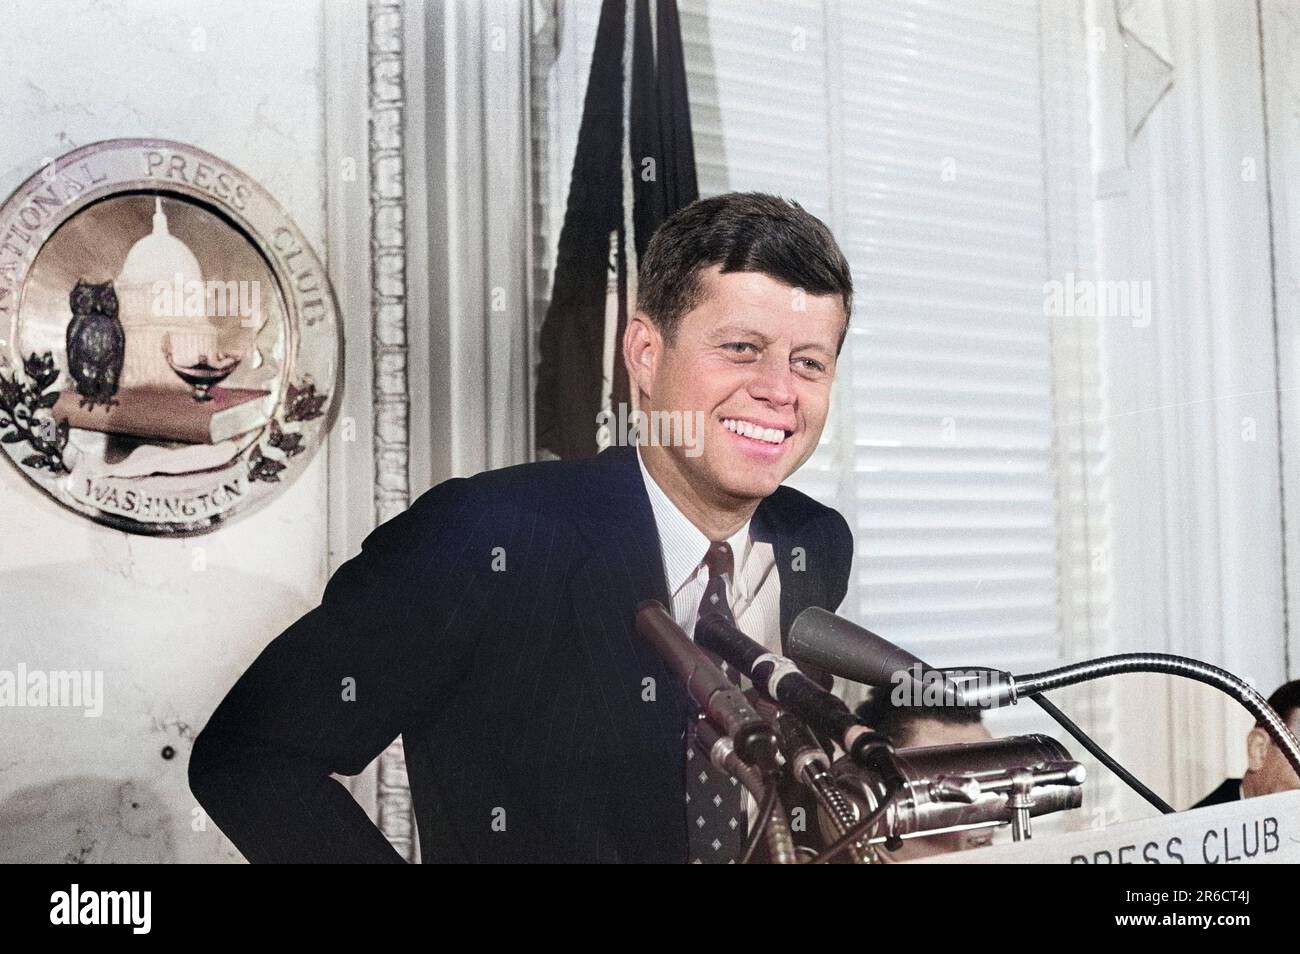 ÉTATS-UNIS Le sénateur John F. Kennedy s'est exprimé au conférencier du National Press Club, Washington, D.C., USA, John T. Bledsoe, ÉTATS-UNIS Collection de photographies du magazine News & World Report, 14 janvier 1960 Banque D'Images